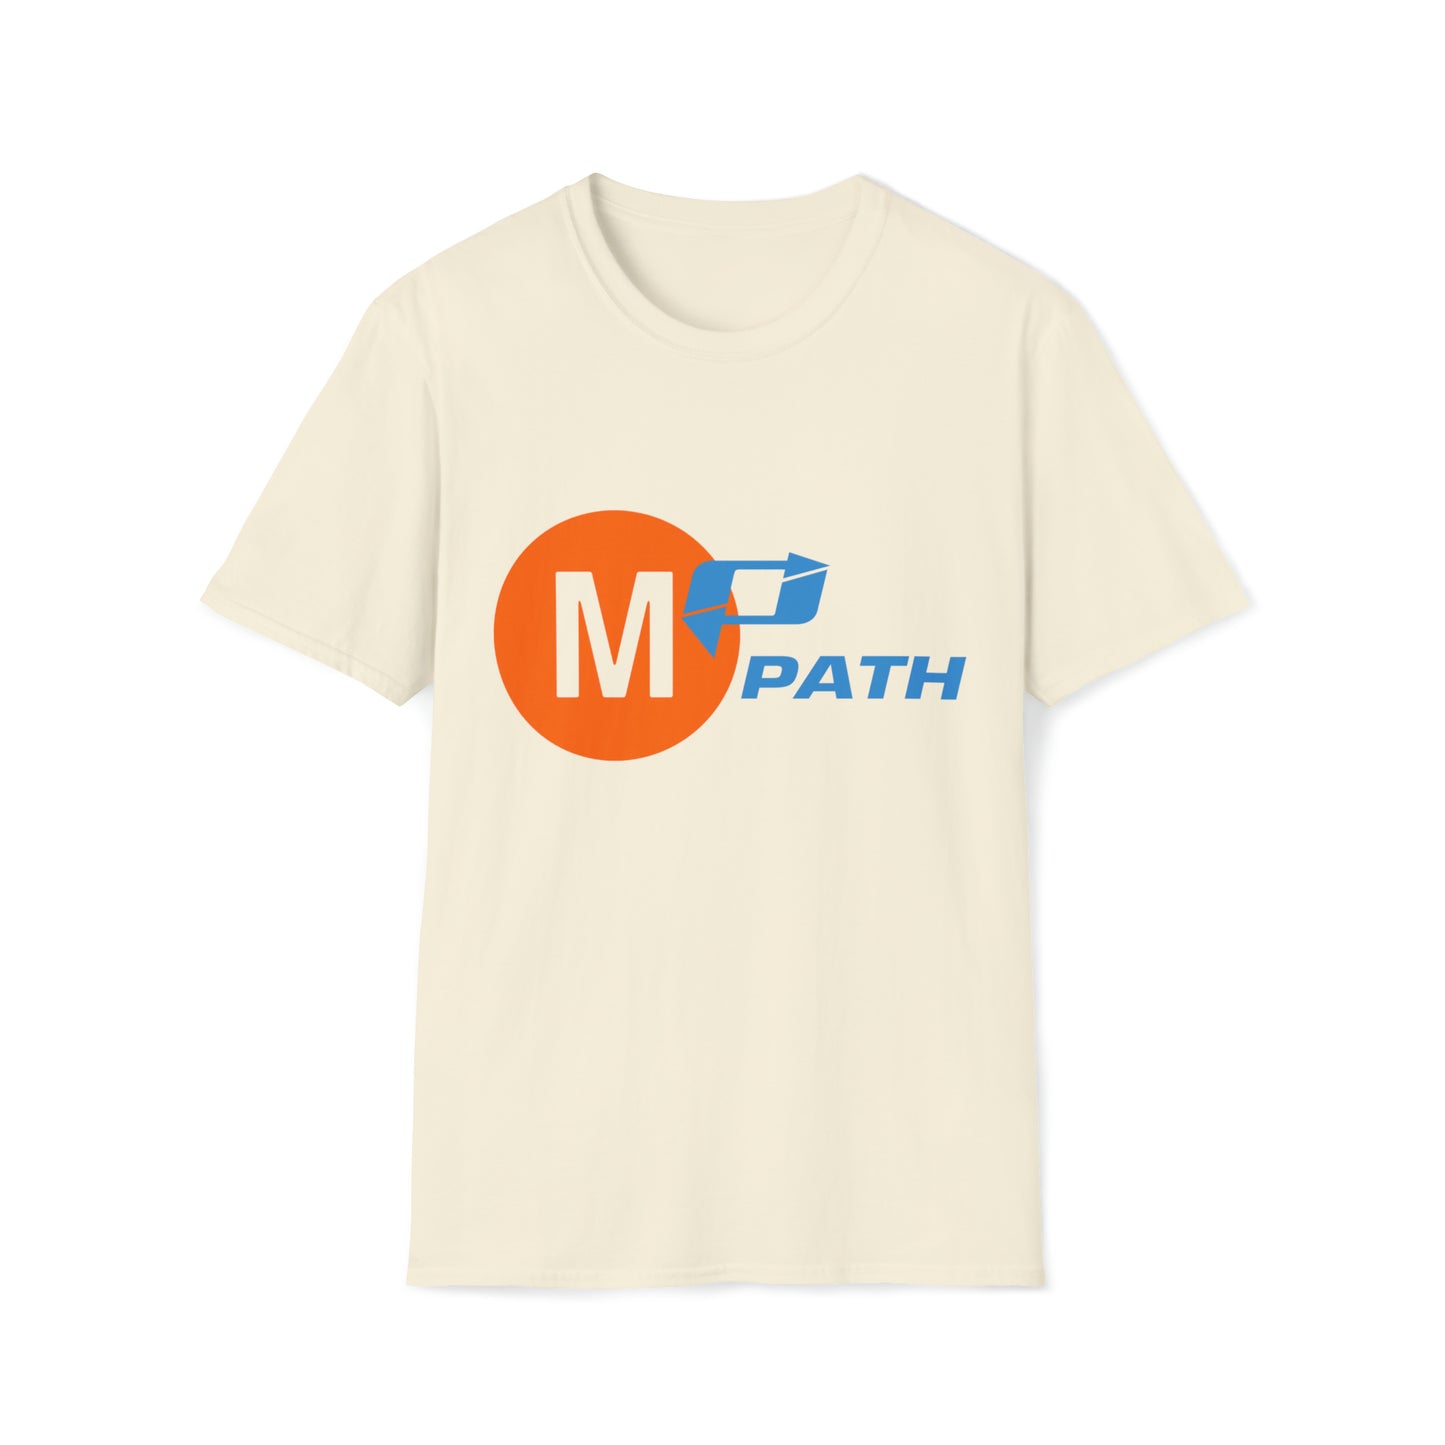 'M Path' TEE